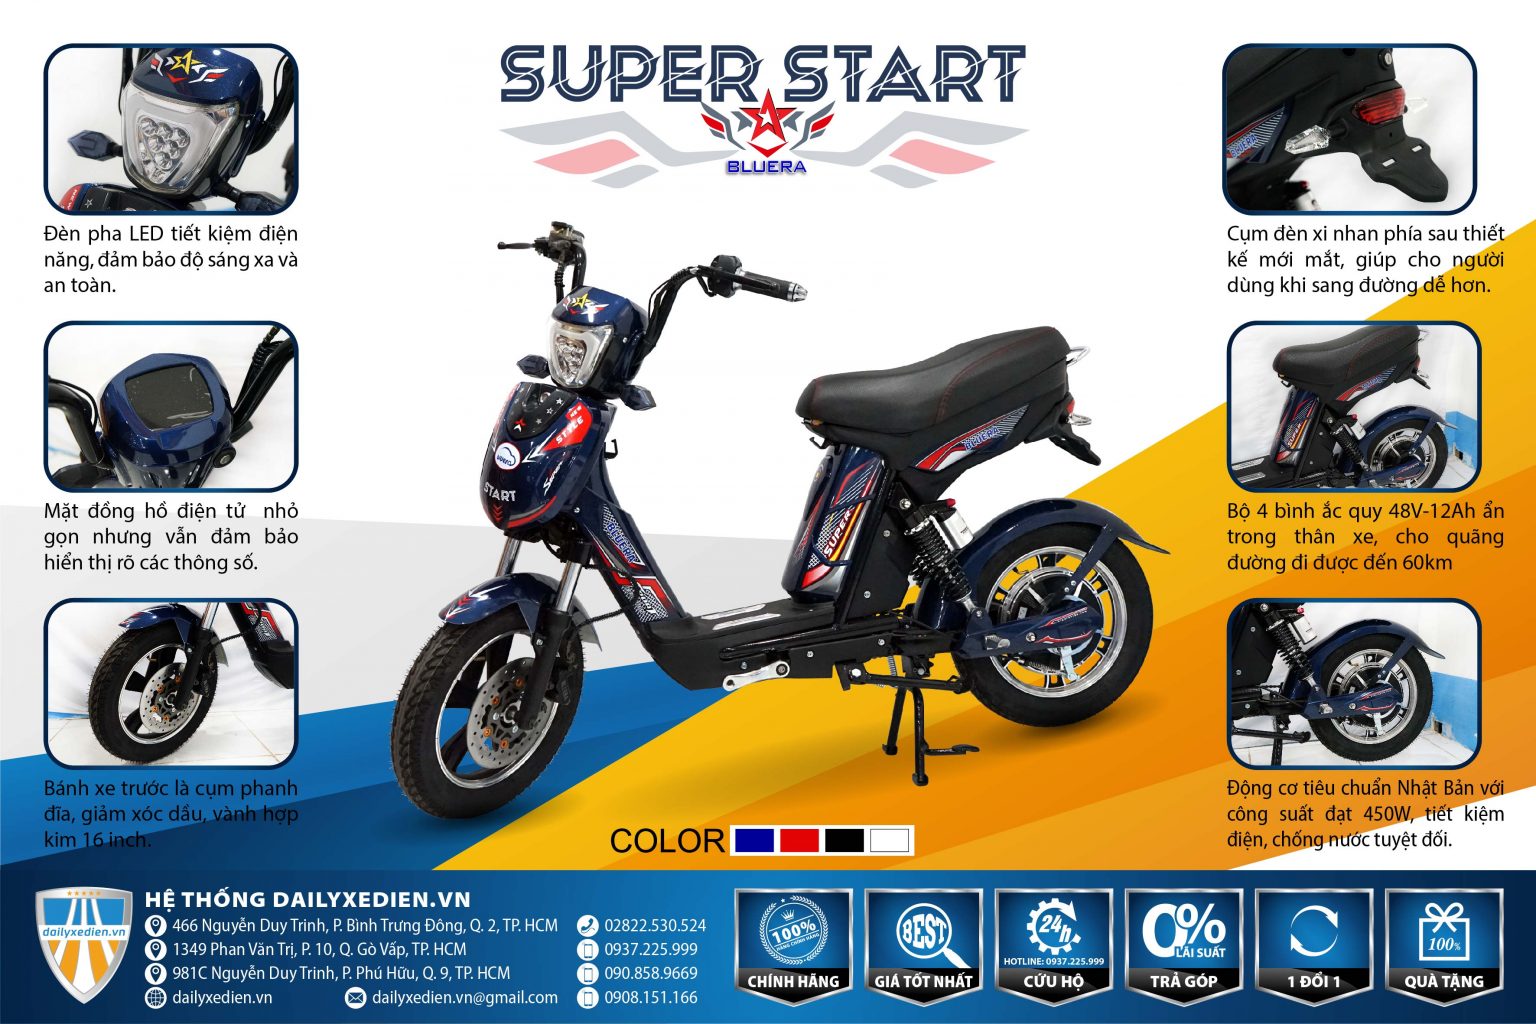 xe dap dien bluera super star ct 22 01 1536x1024 1 - Xe đạp điện Super Star luôn bên bạn bất kì ở đâu